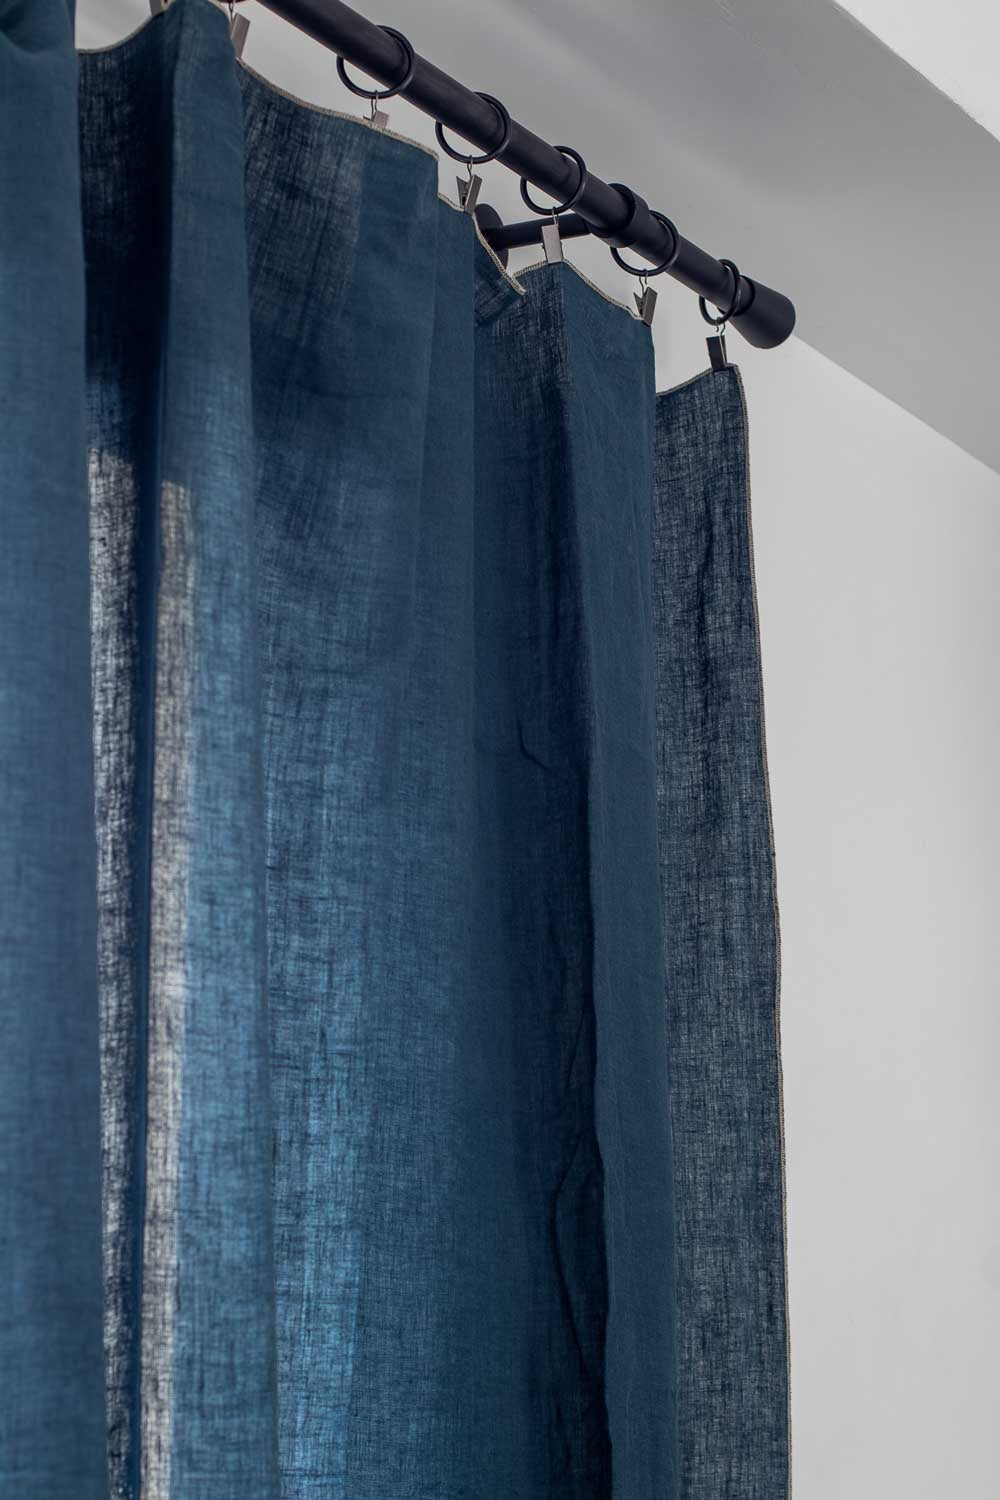 harmony-rideau venise 160x300 cm haomy bleu de prusse